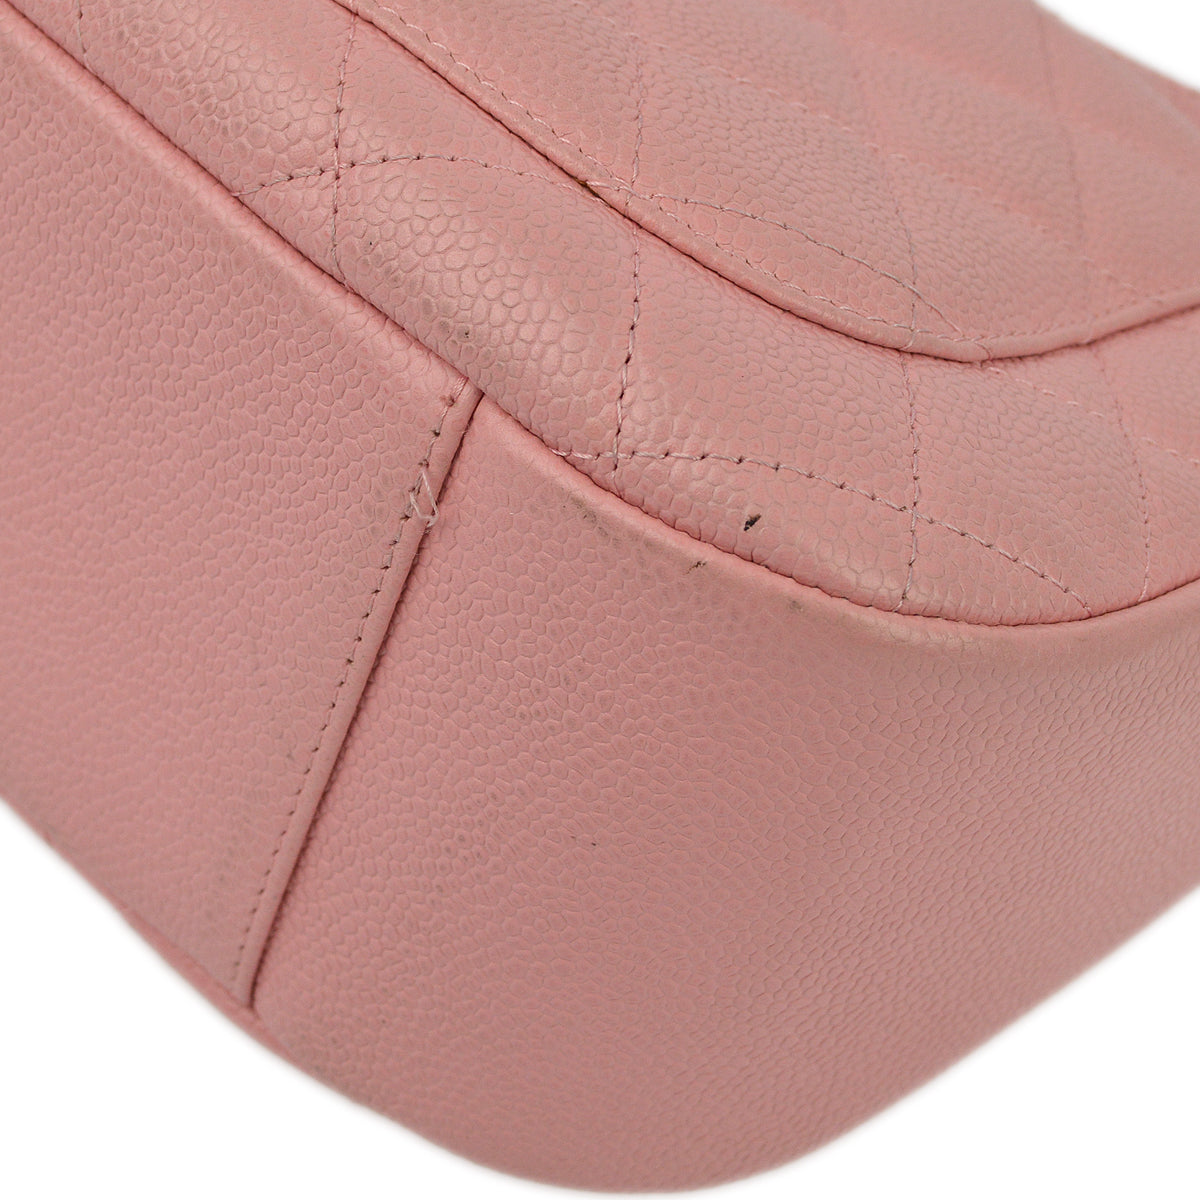 Chanel Pink Caviar Hobo Shoulder Bag